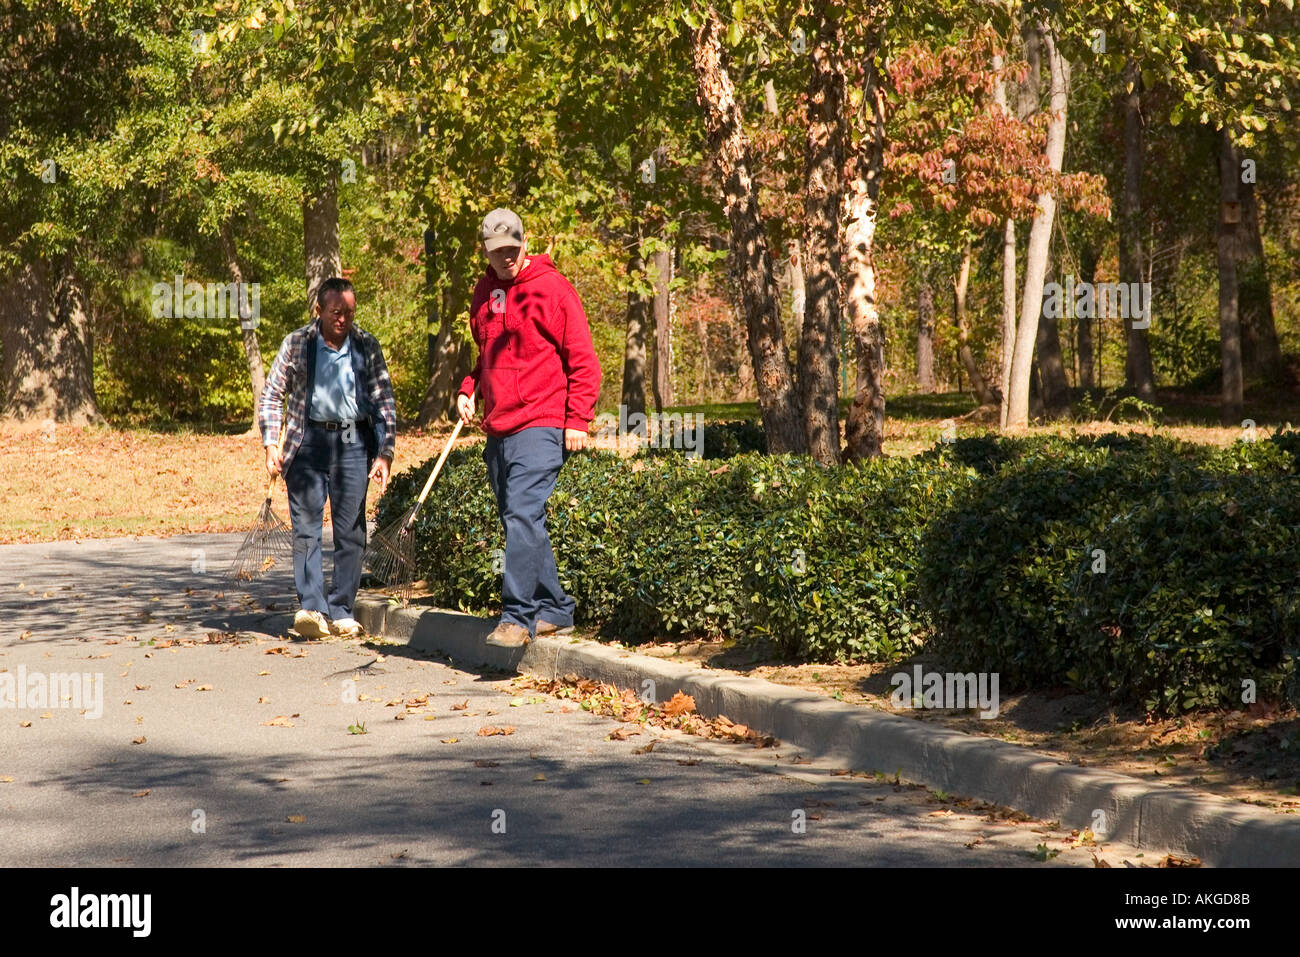 Râteau à feuilles automne travailleurs Saluda Shoals Park Columbia South Carolina USA Banque D'Images